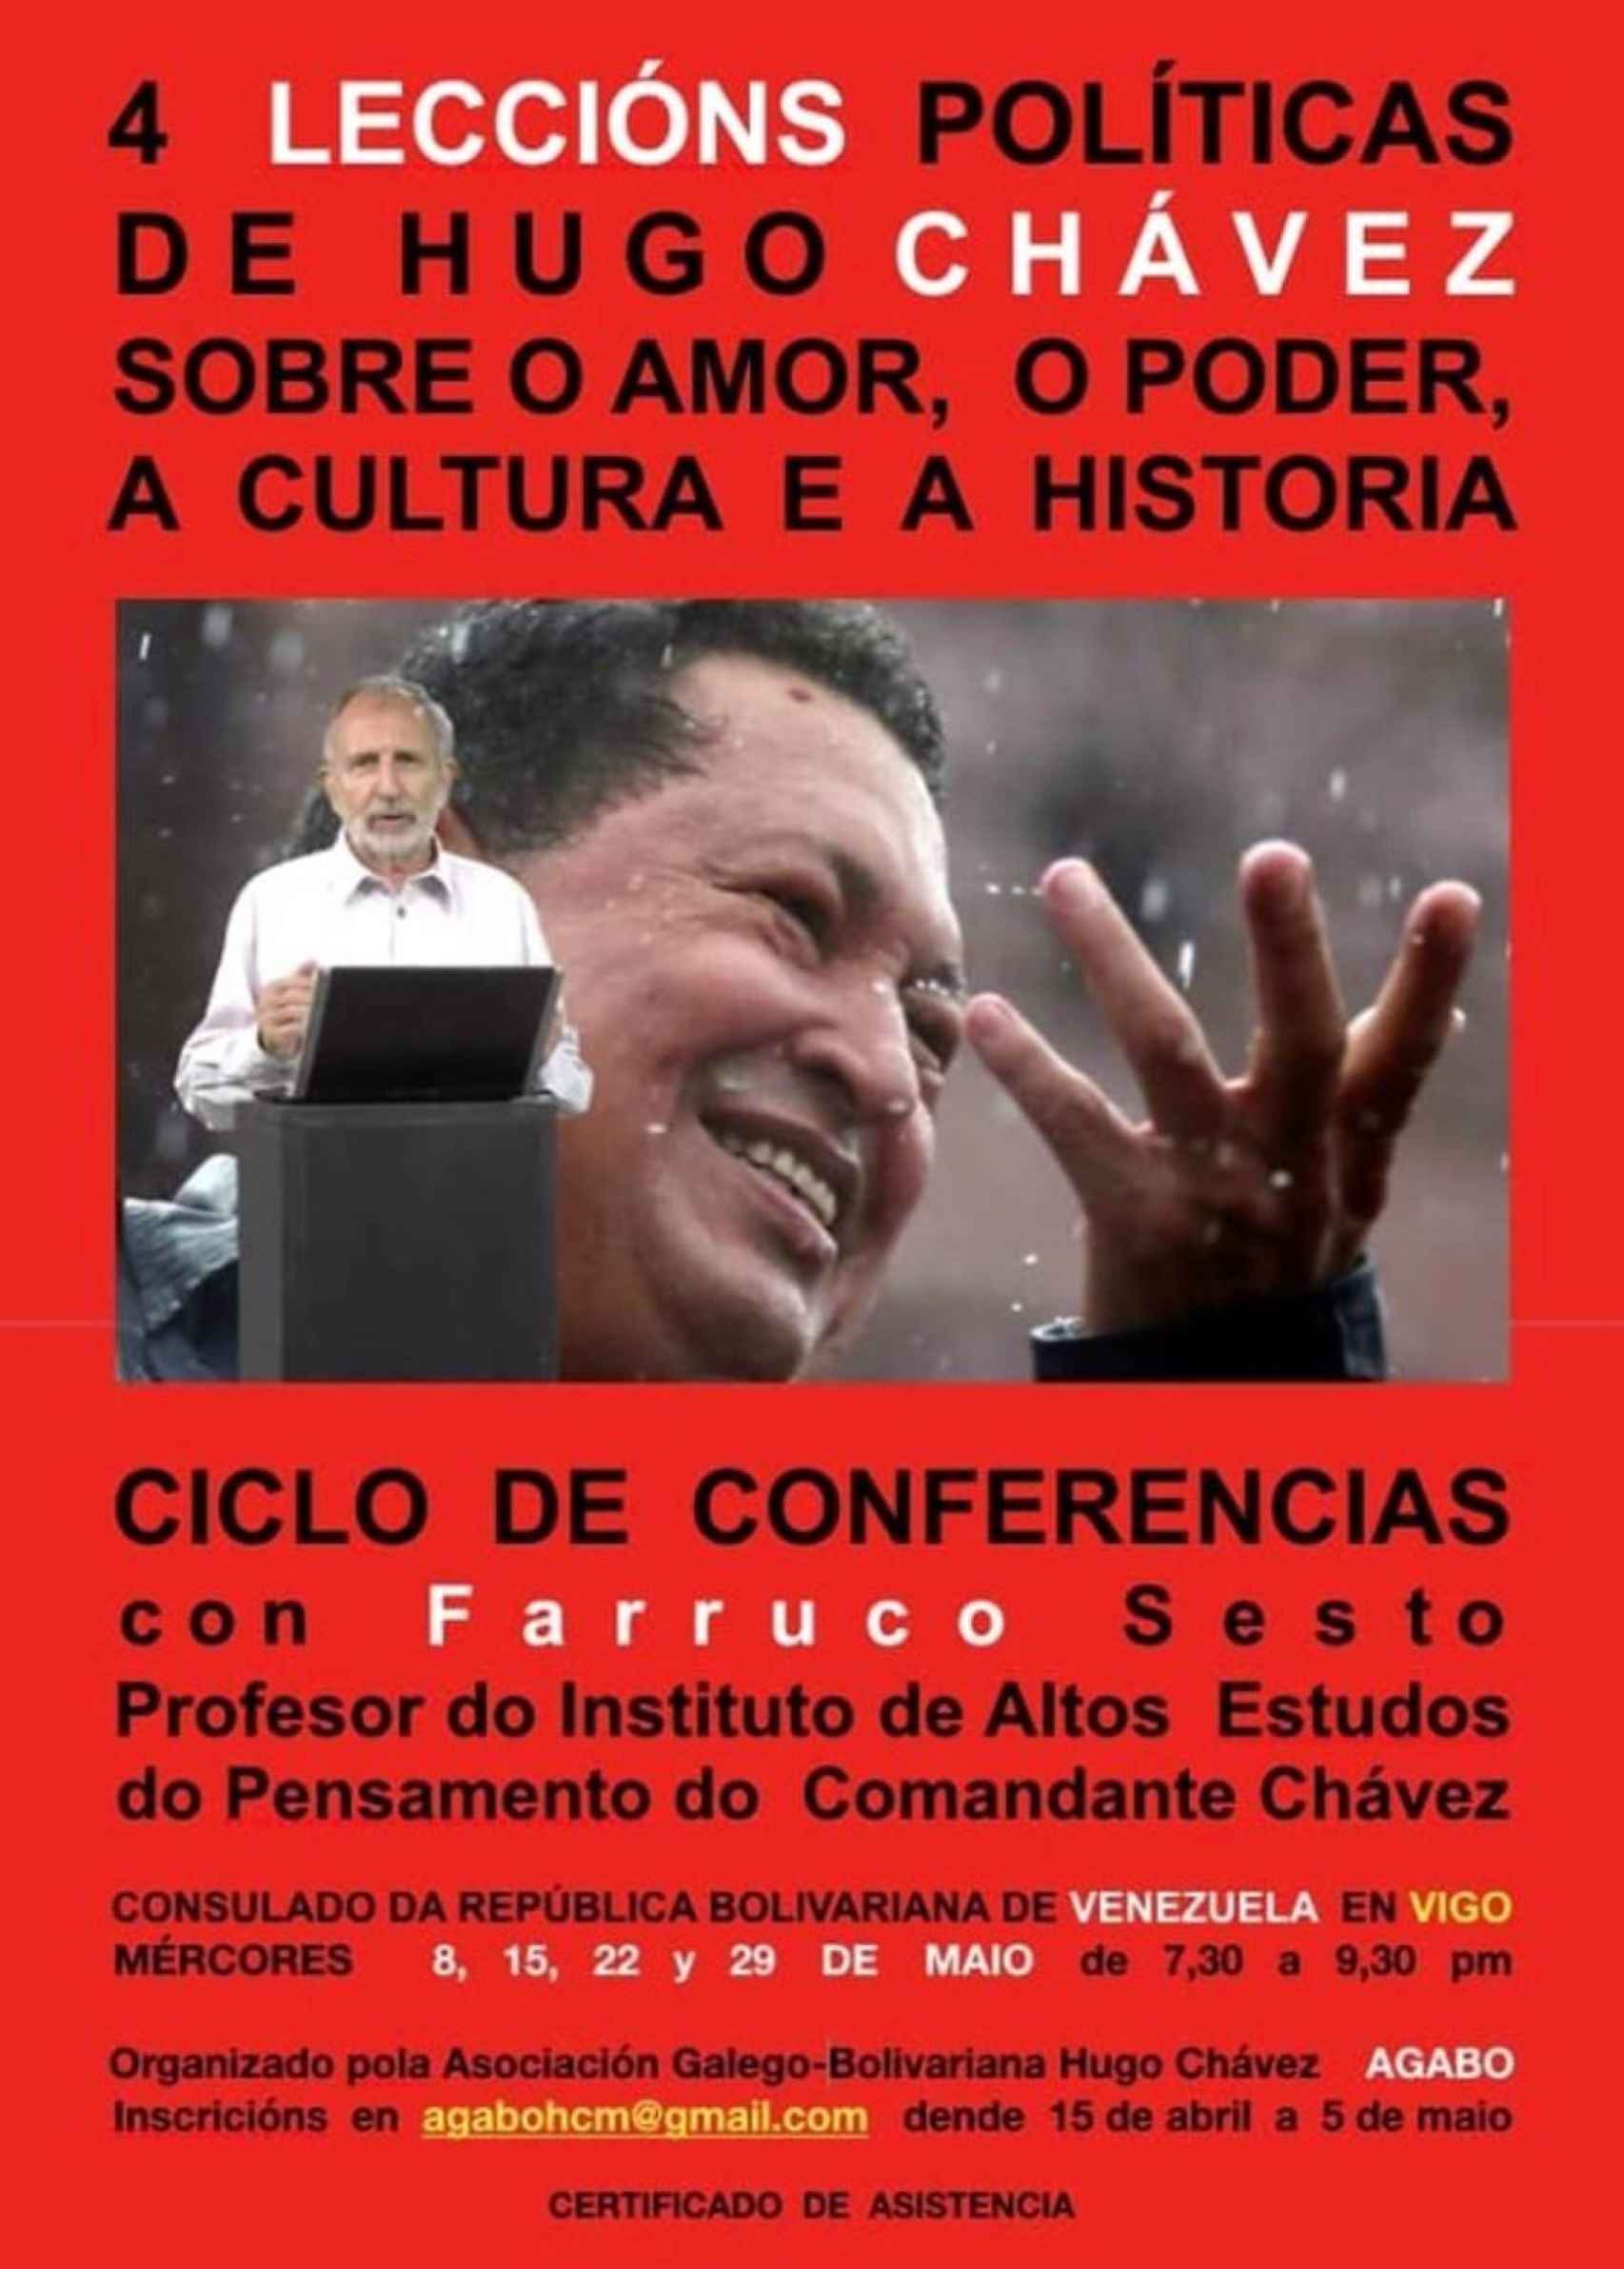 Cartel promocional del ciclo de conferencias en el consulado de Venezuela en Vigo.